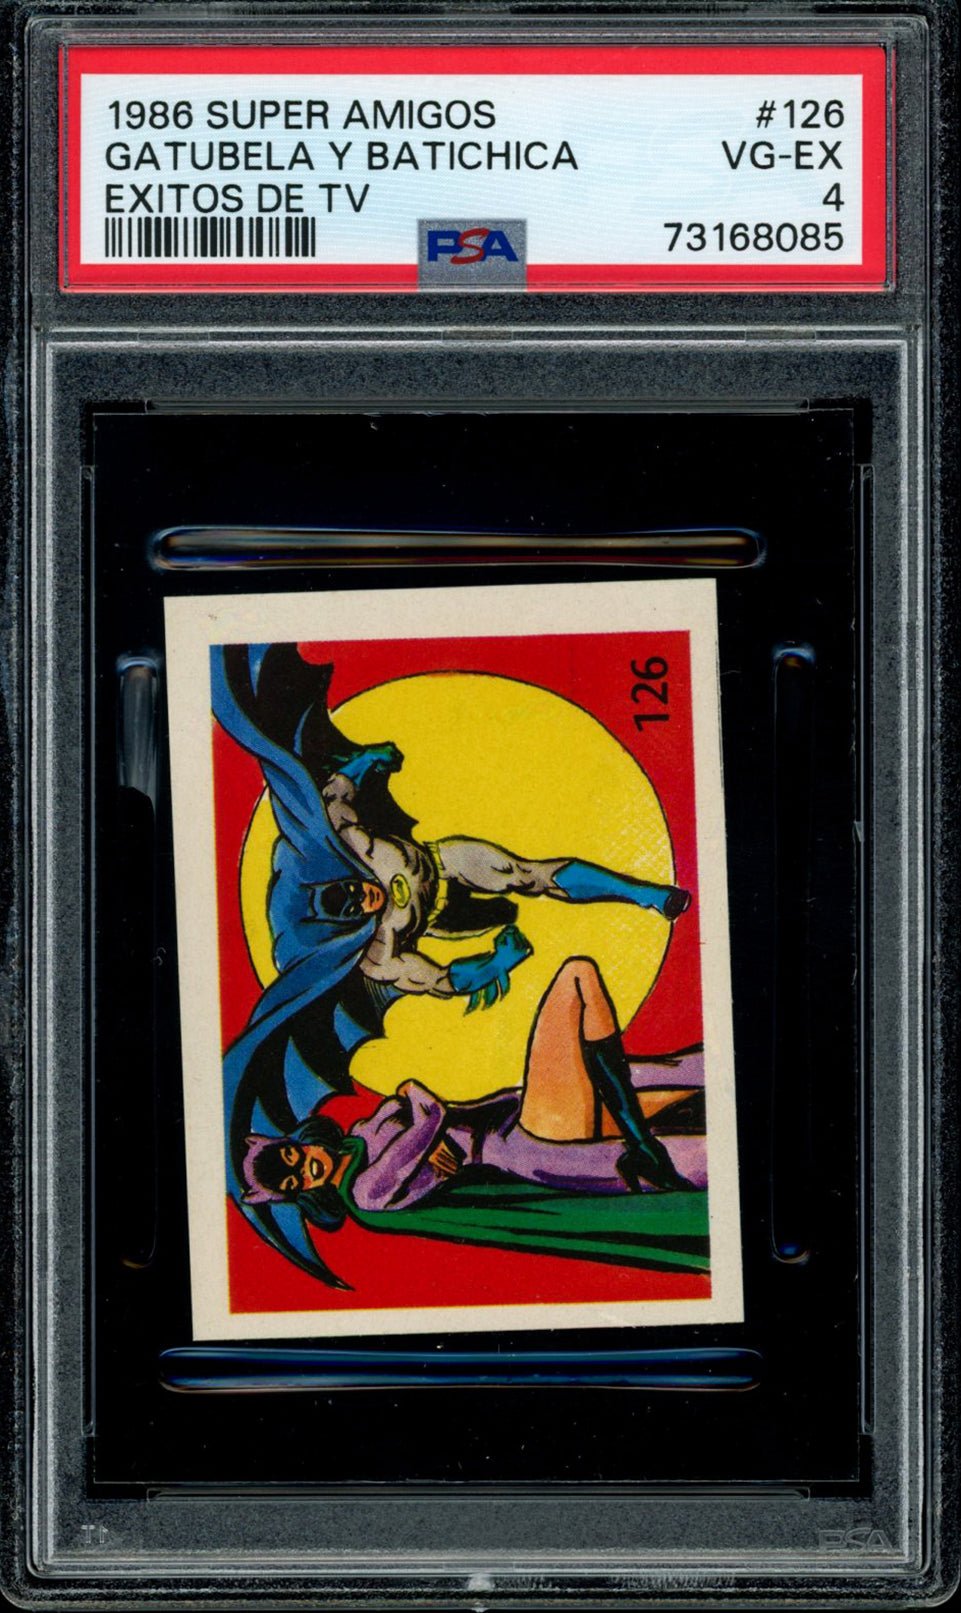 BATWOMAN & BATMAN PSA 4 1986 Reyauca Super Amigos Exitos de TV #126 DC Comics Base Graded Cards - Hobby Gems